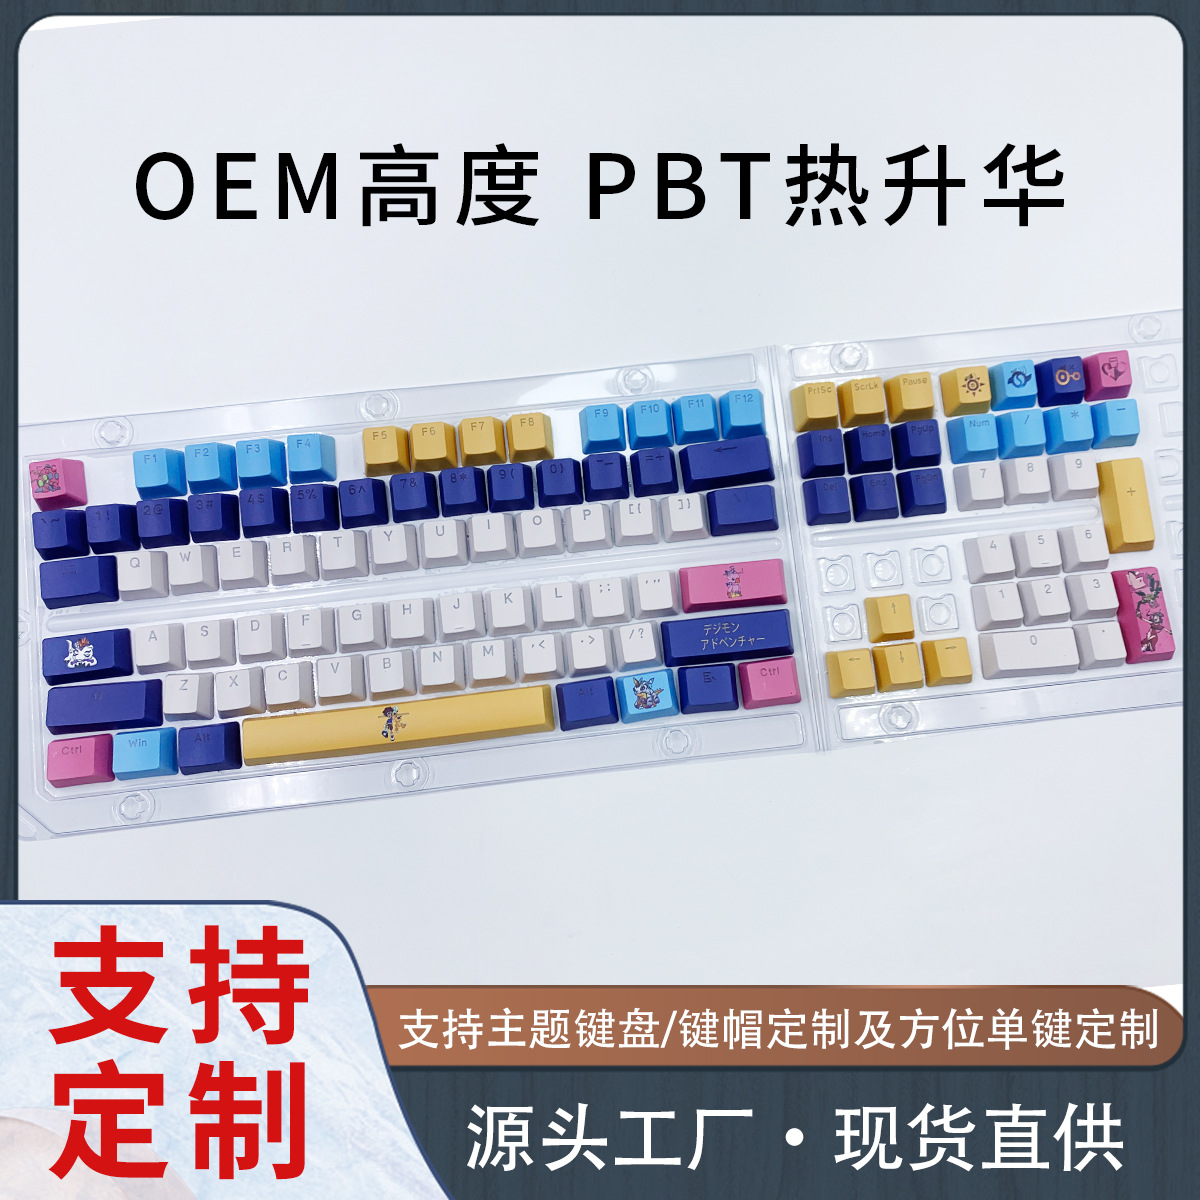 OE/M键帽彩色黑白秋莉莉珊瑚海蜂蜜牛奶透光圣诞树寿司机械键盘